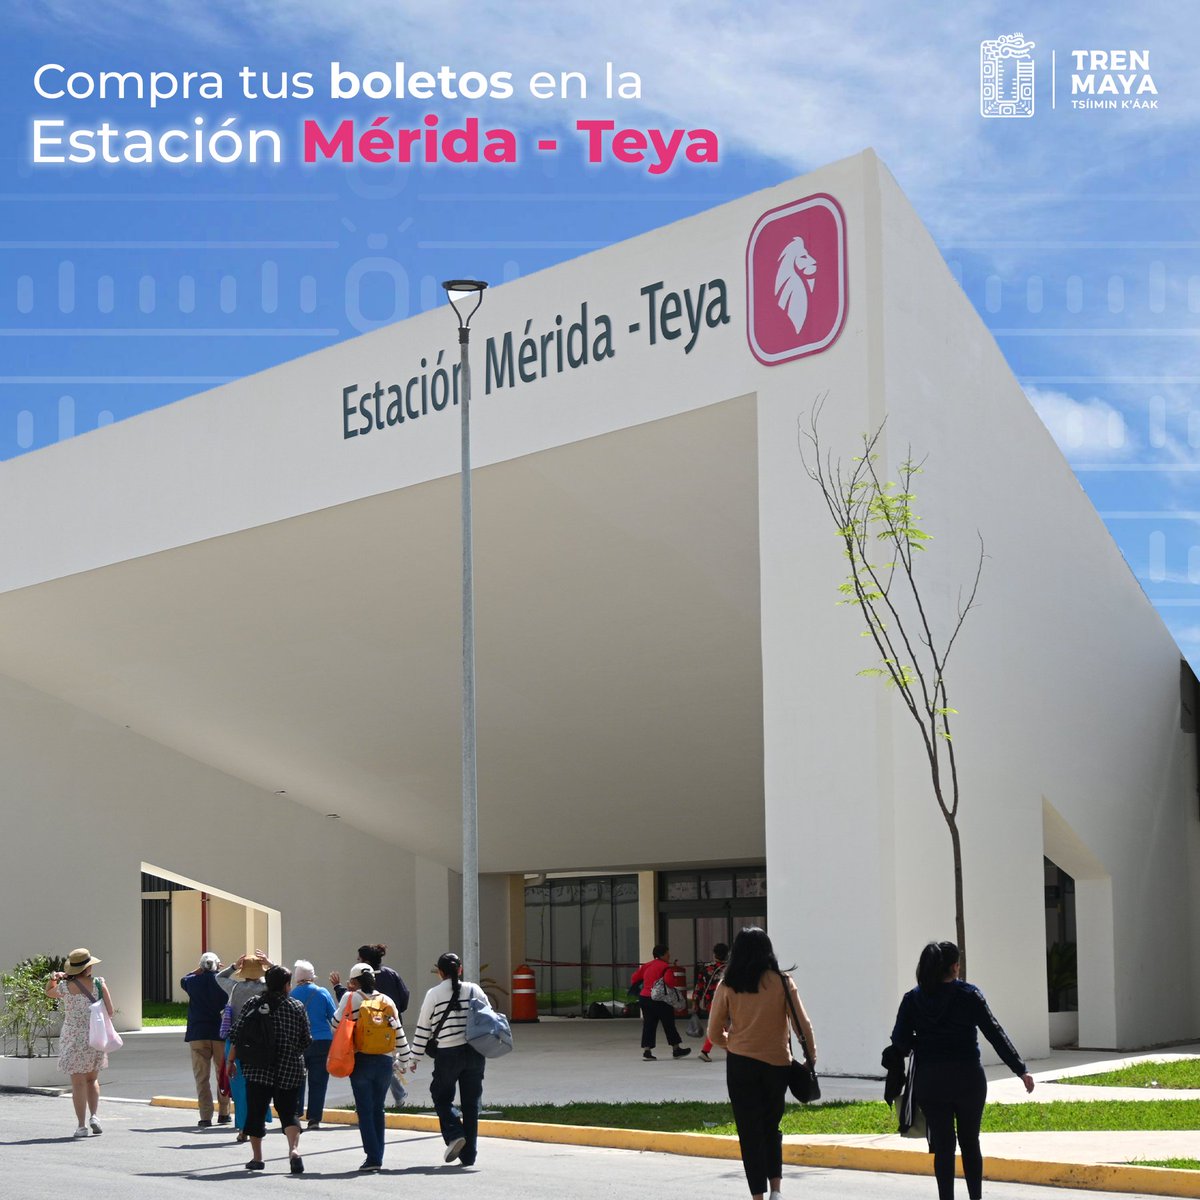 ¡No pierdas la oportunidad de vivir la aventura del Tren Maya! 🚂 Adquiere tus boletos de manera directa en la estación Mérida Teya. ¡Te esperamos para vivir momentos emocionantes y llenos de magia! ✨ #TrenMaya #Mérida 🎟️🌟